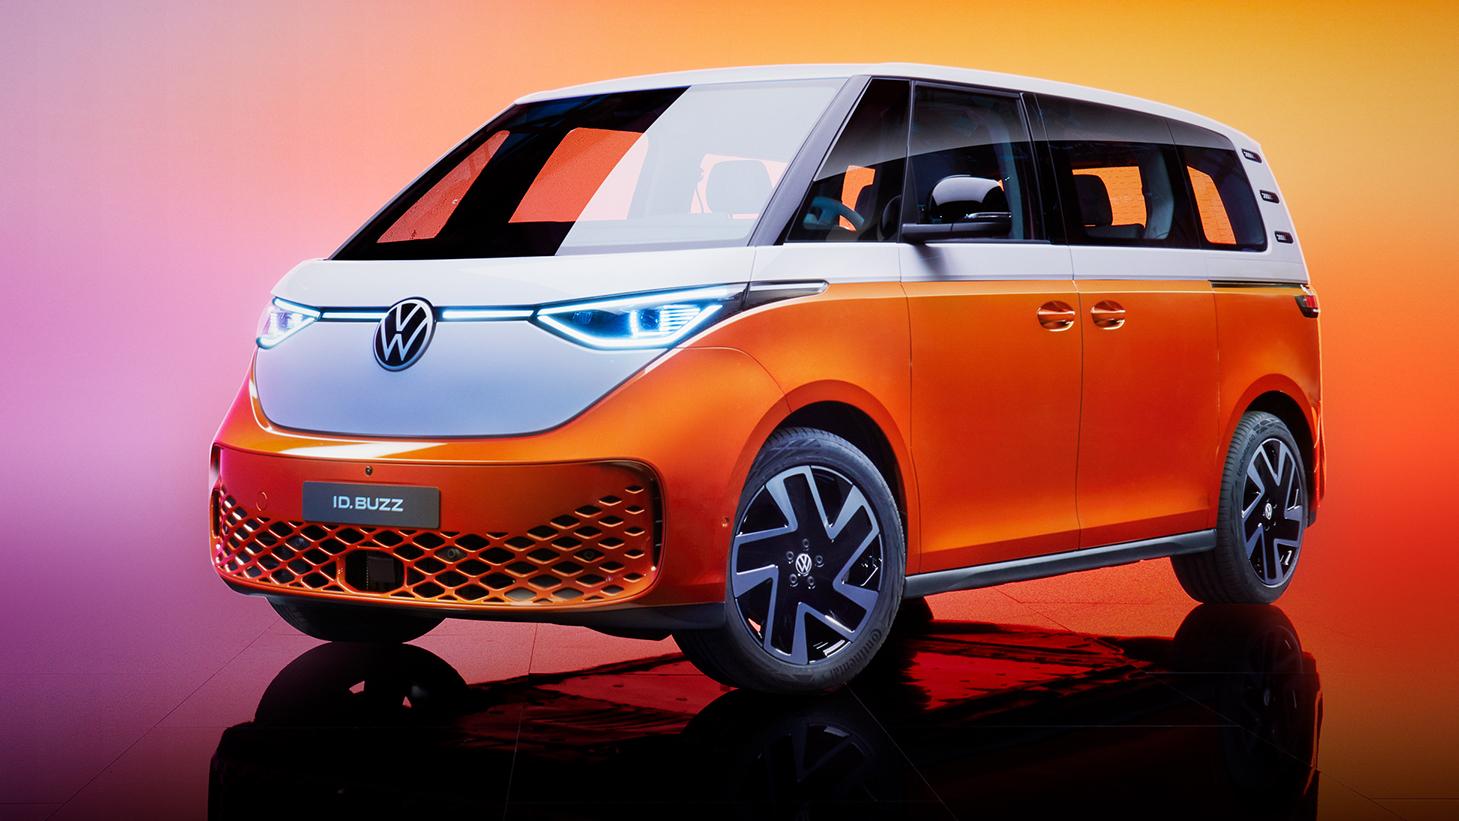 Nederlandse Prijs Van De Elektrische Volkswagen Id Buzz Is Bekend